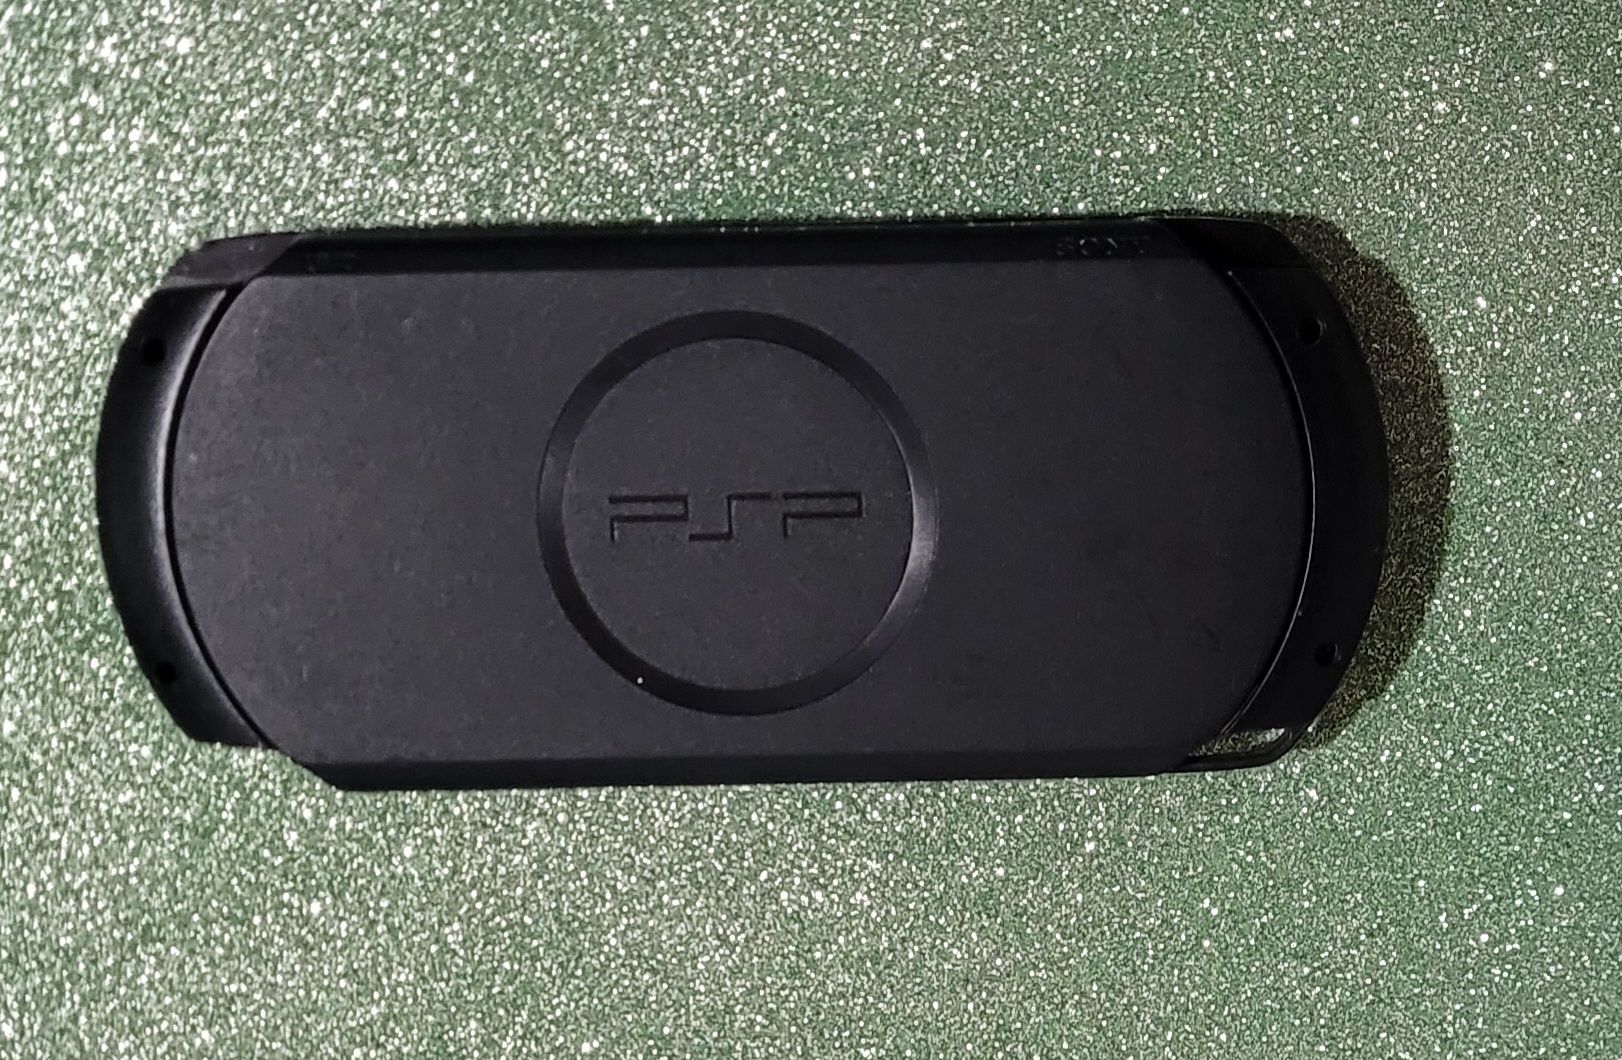 PSP E1004 (ref.E1004A) Desbloqueada + cartão de 128gb cheio de jogos